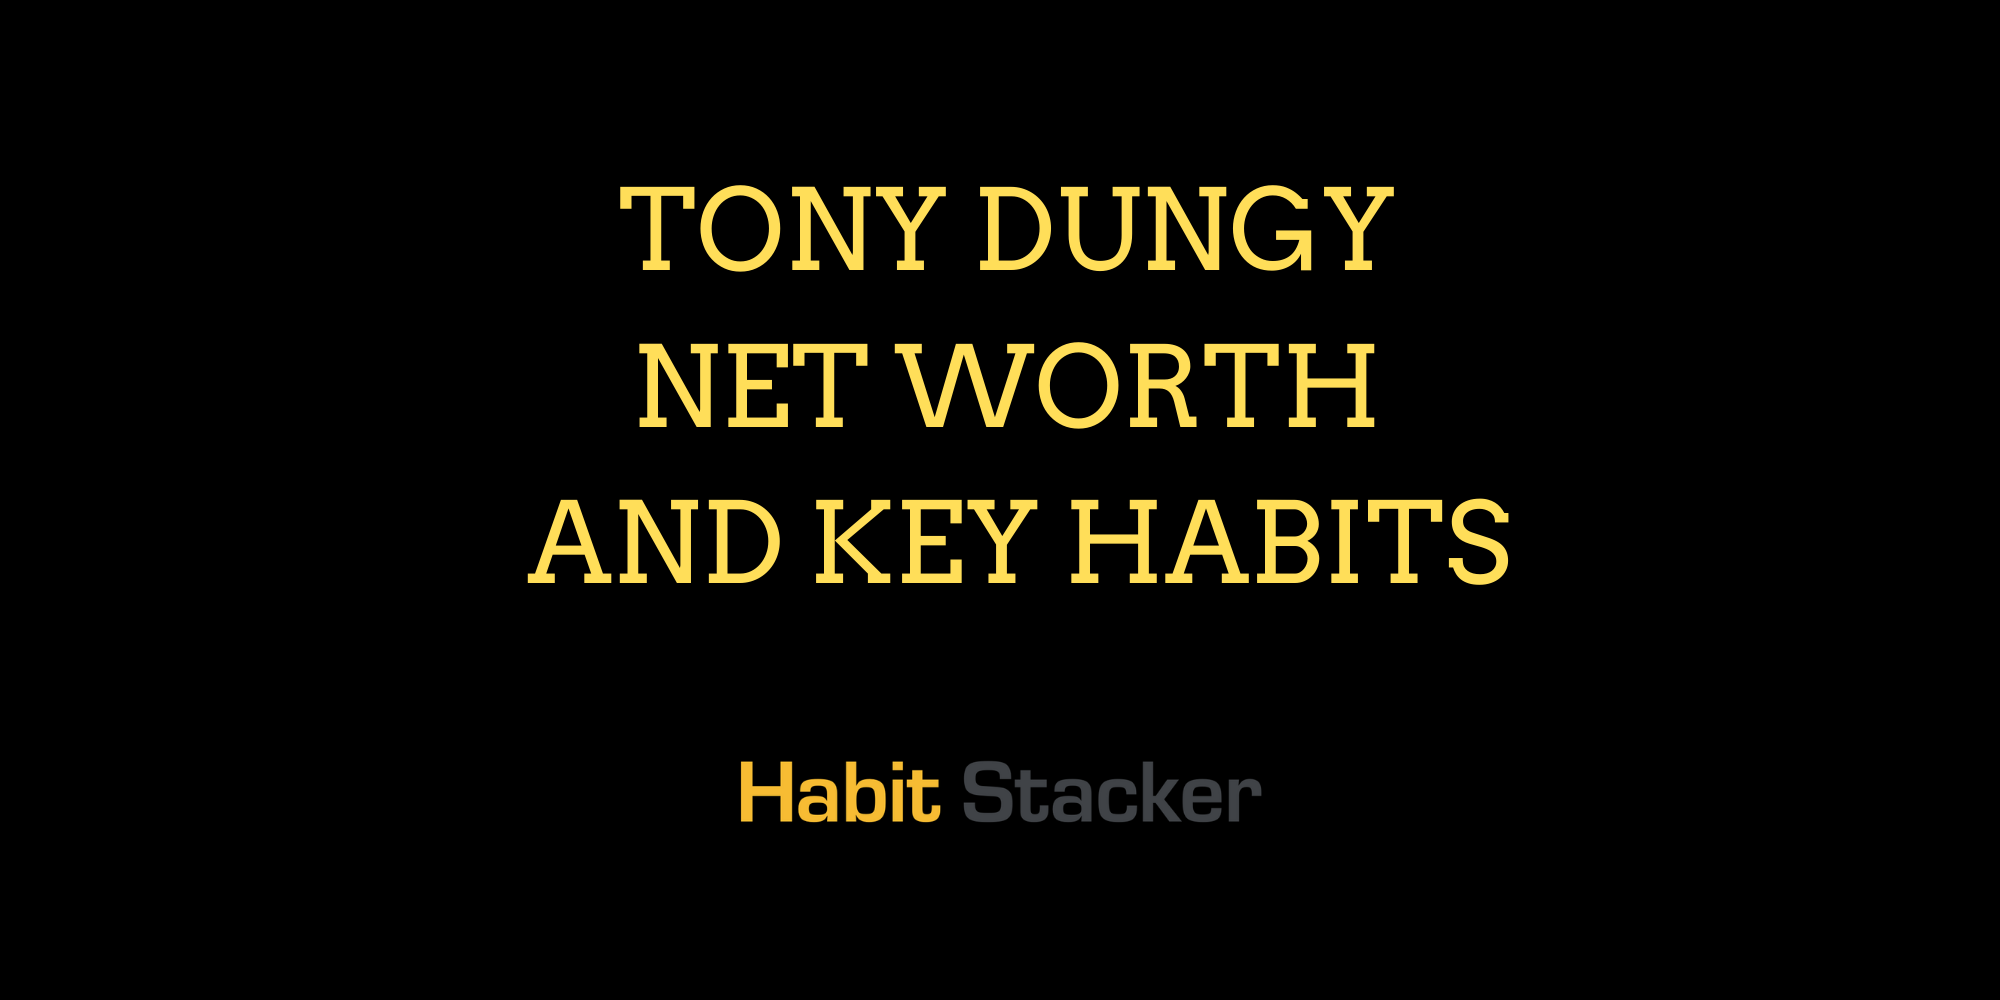 Tony Dungy Net Worth and Key Habits